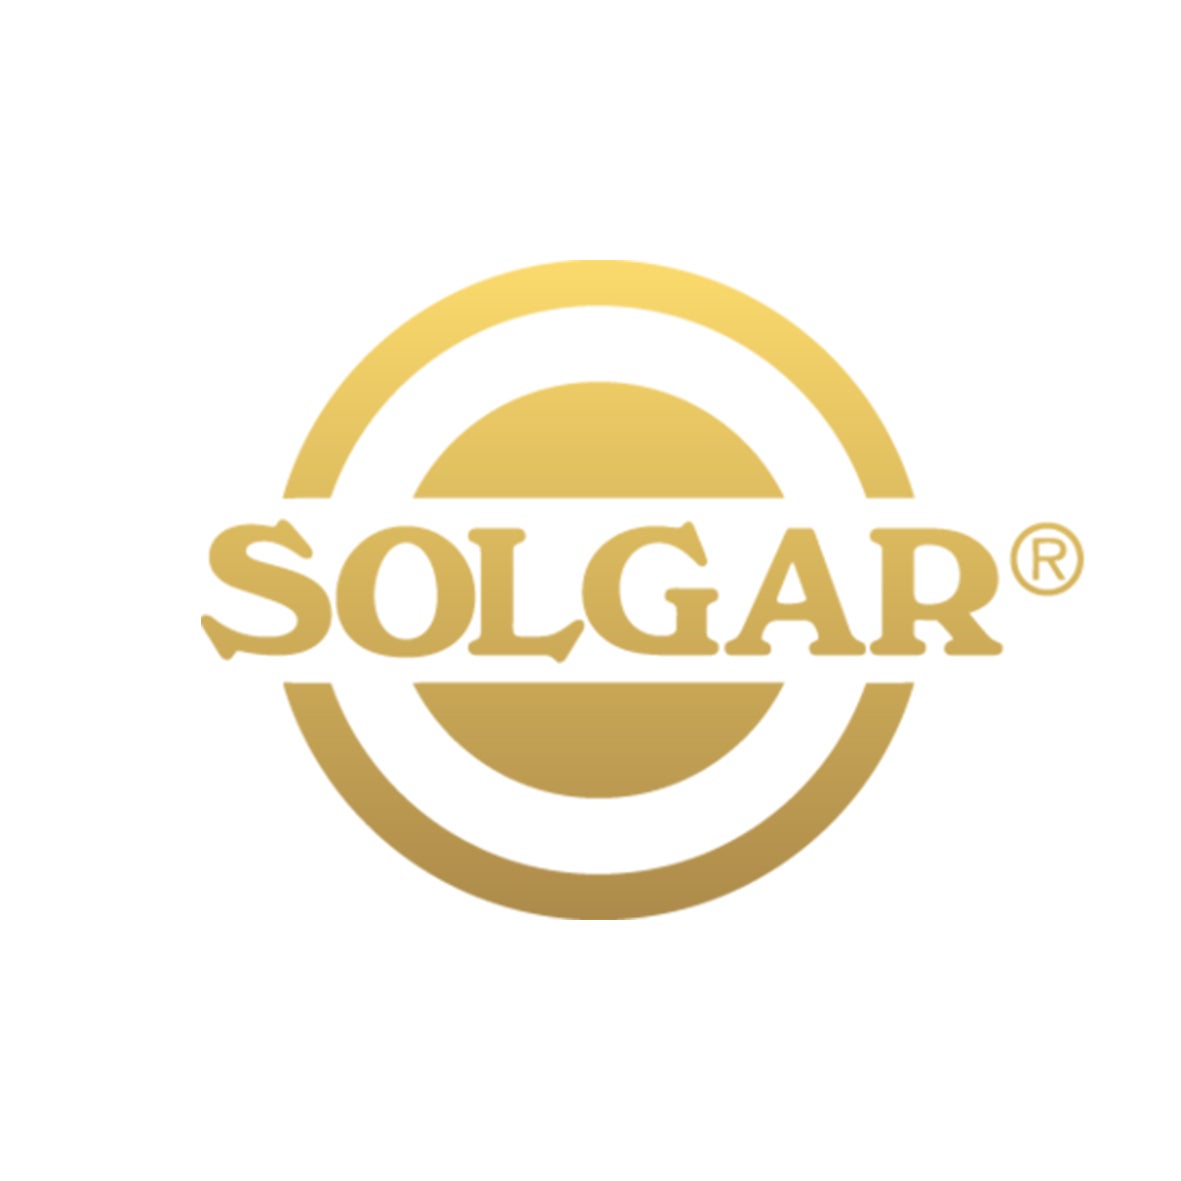 NHSc_Logos_solgar_logo.jpg